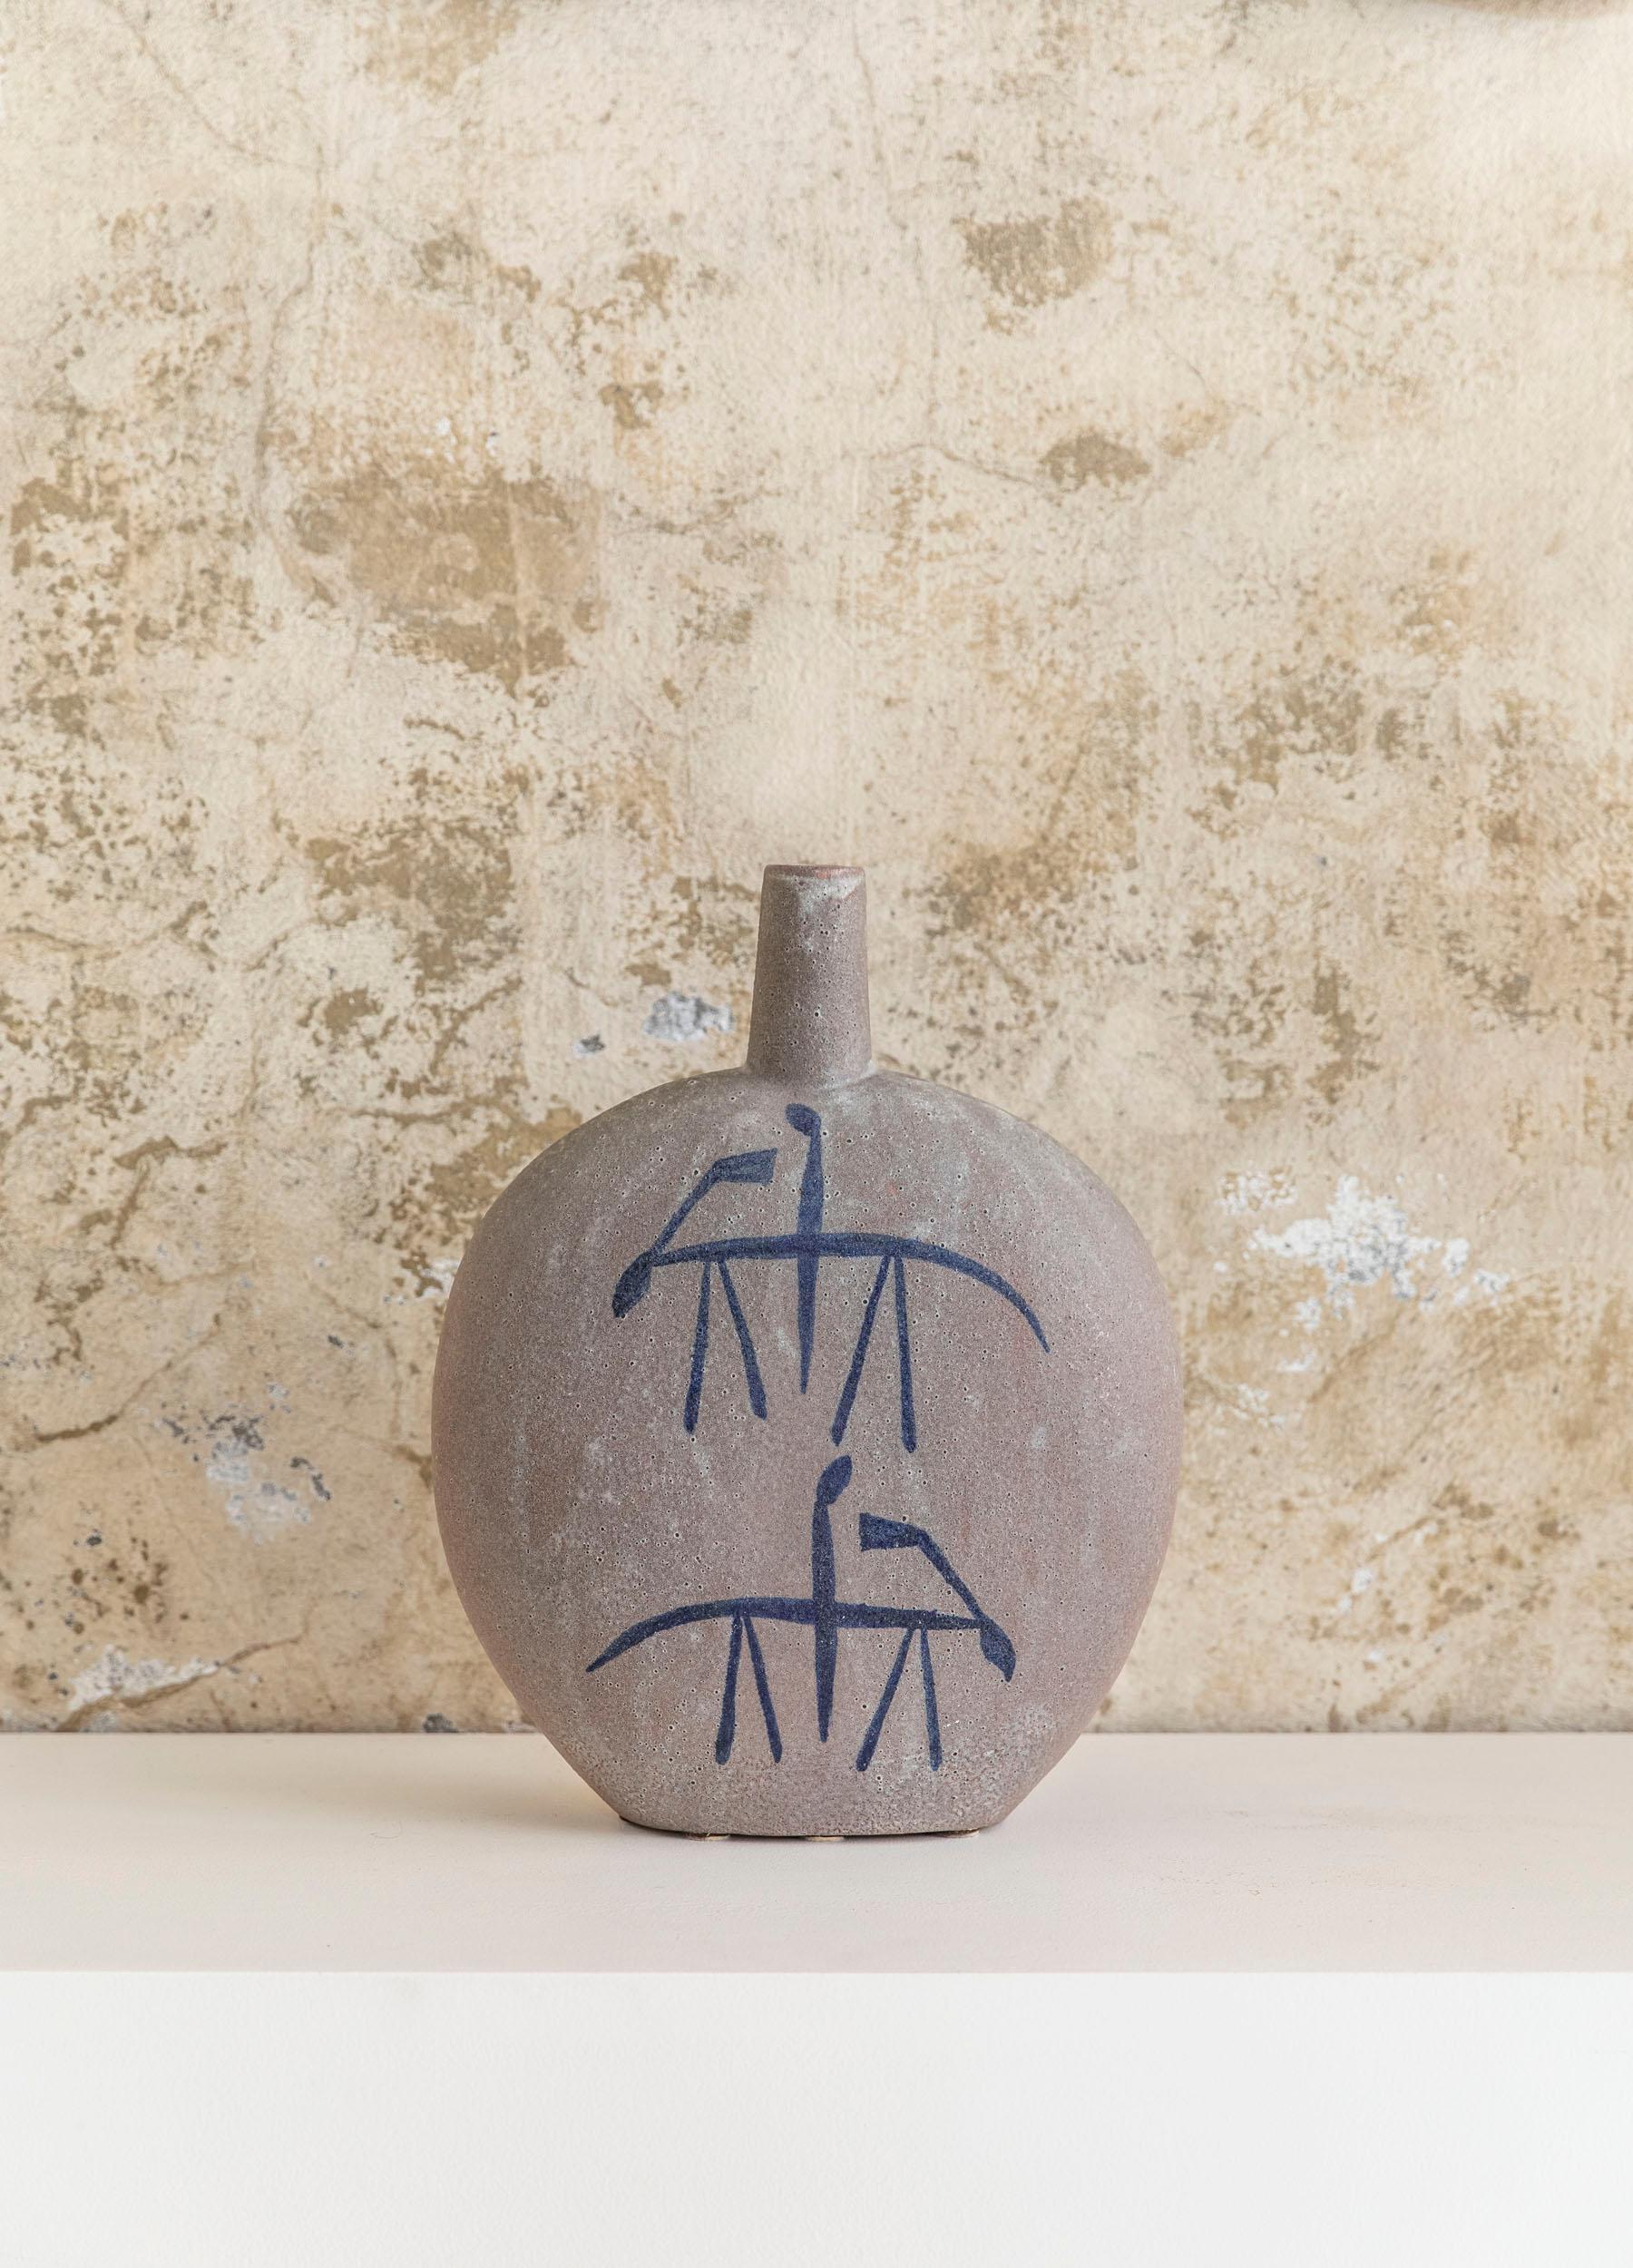 Polychrome Majolika mit einer runden und schmalen Form, ist die Vase in grauer Keramik mit blauen Dekorationen. 
Hergestellt von Giovanni Petucco, Italien, um 1950 
Der Artikel ist auf der Unterseite signiert.